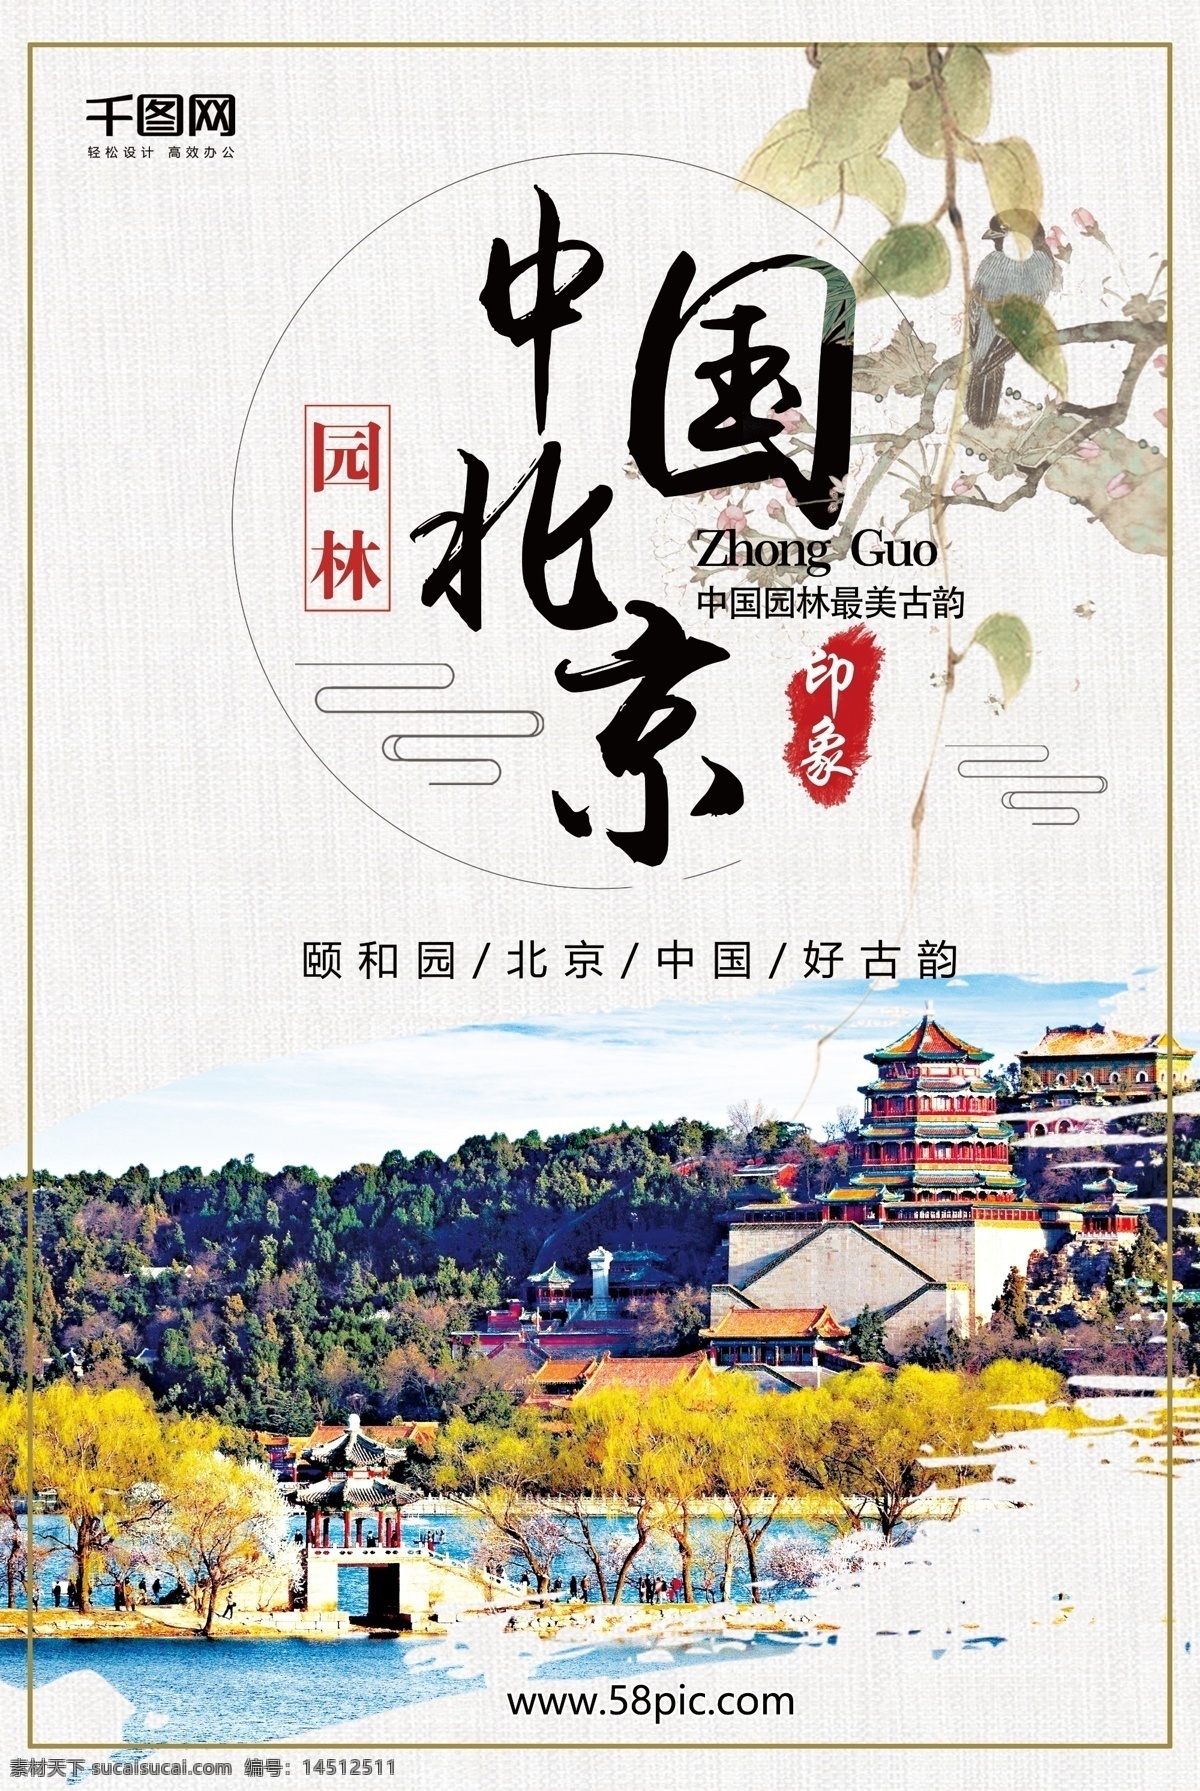 北京 颐和园 旅游 中国 风 水墨 山水画 海报 背景 中国风 园林 龙 塔 水 树